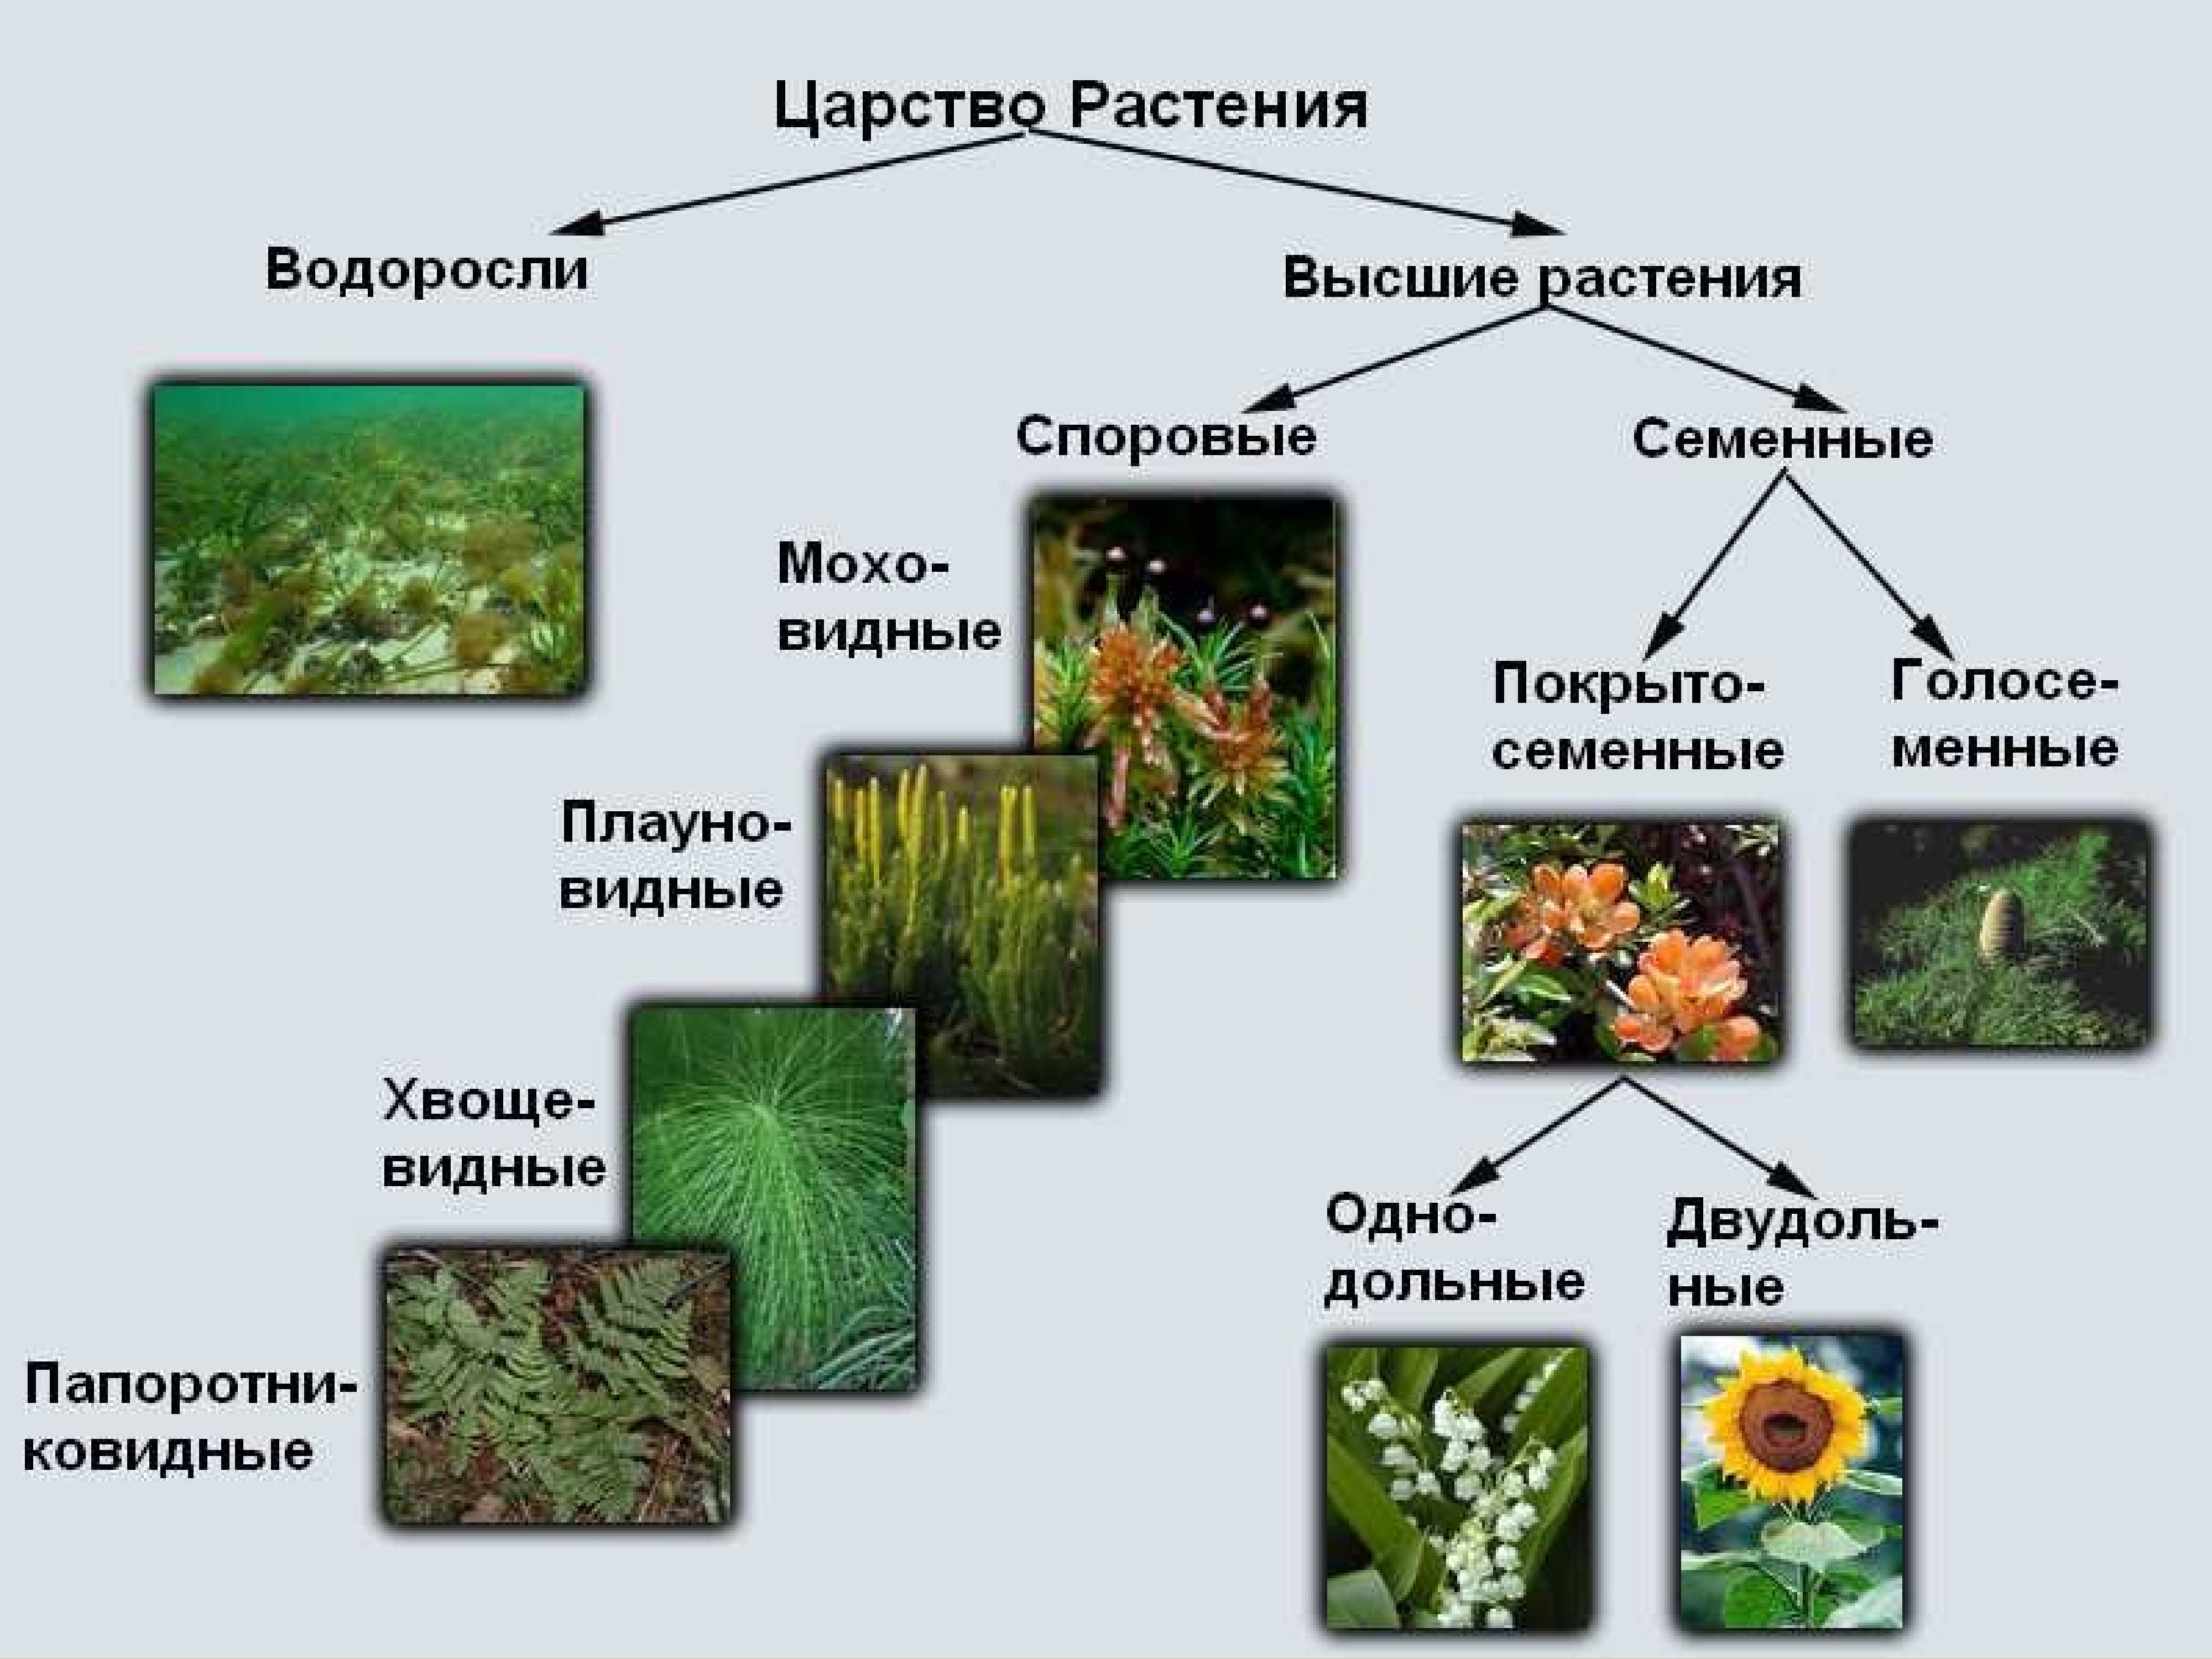 Схема растений низшие высшие